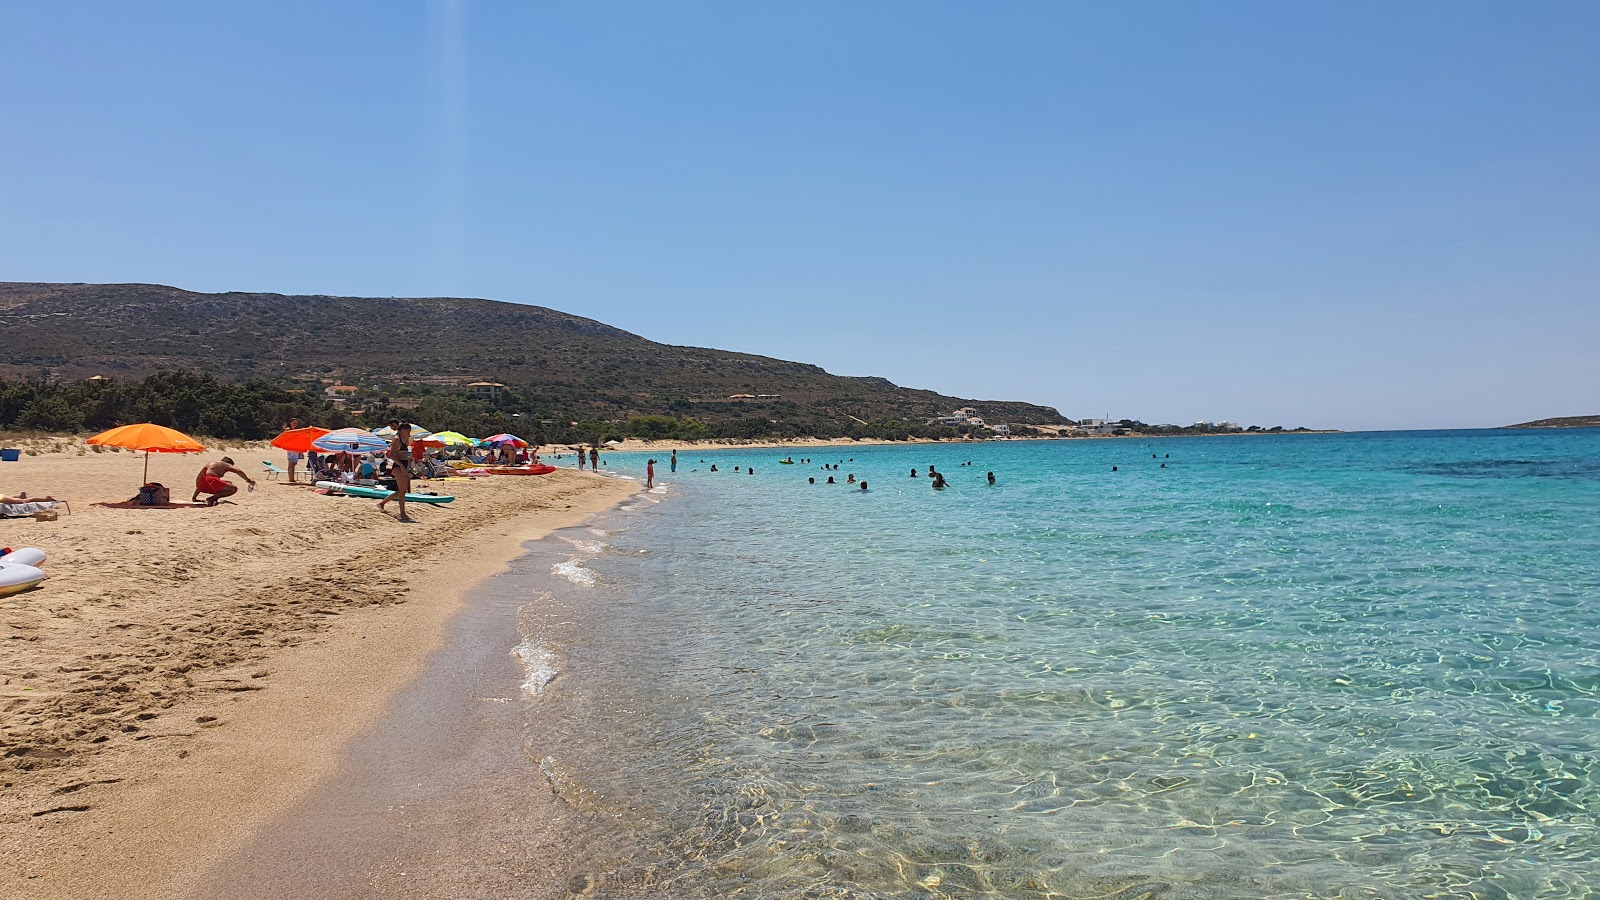 Zdjęcie Panagia beach - popularne miejsce wśród znawców relaksu